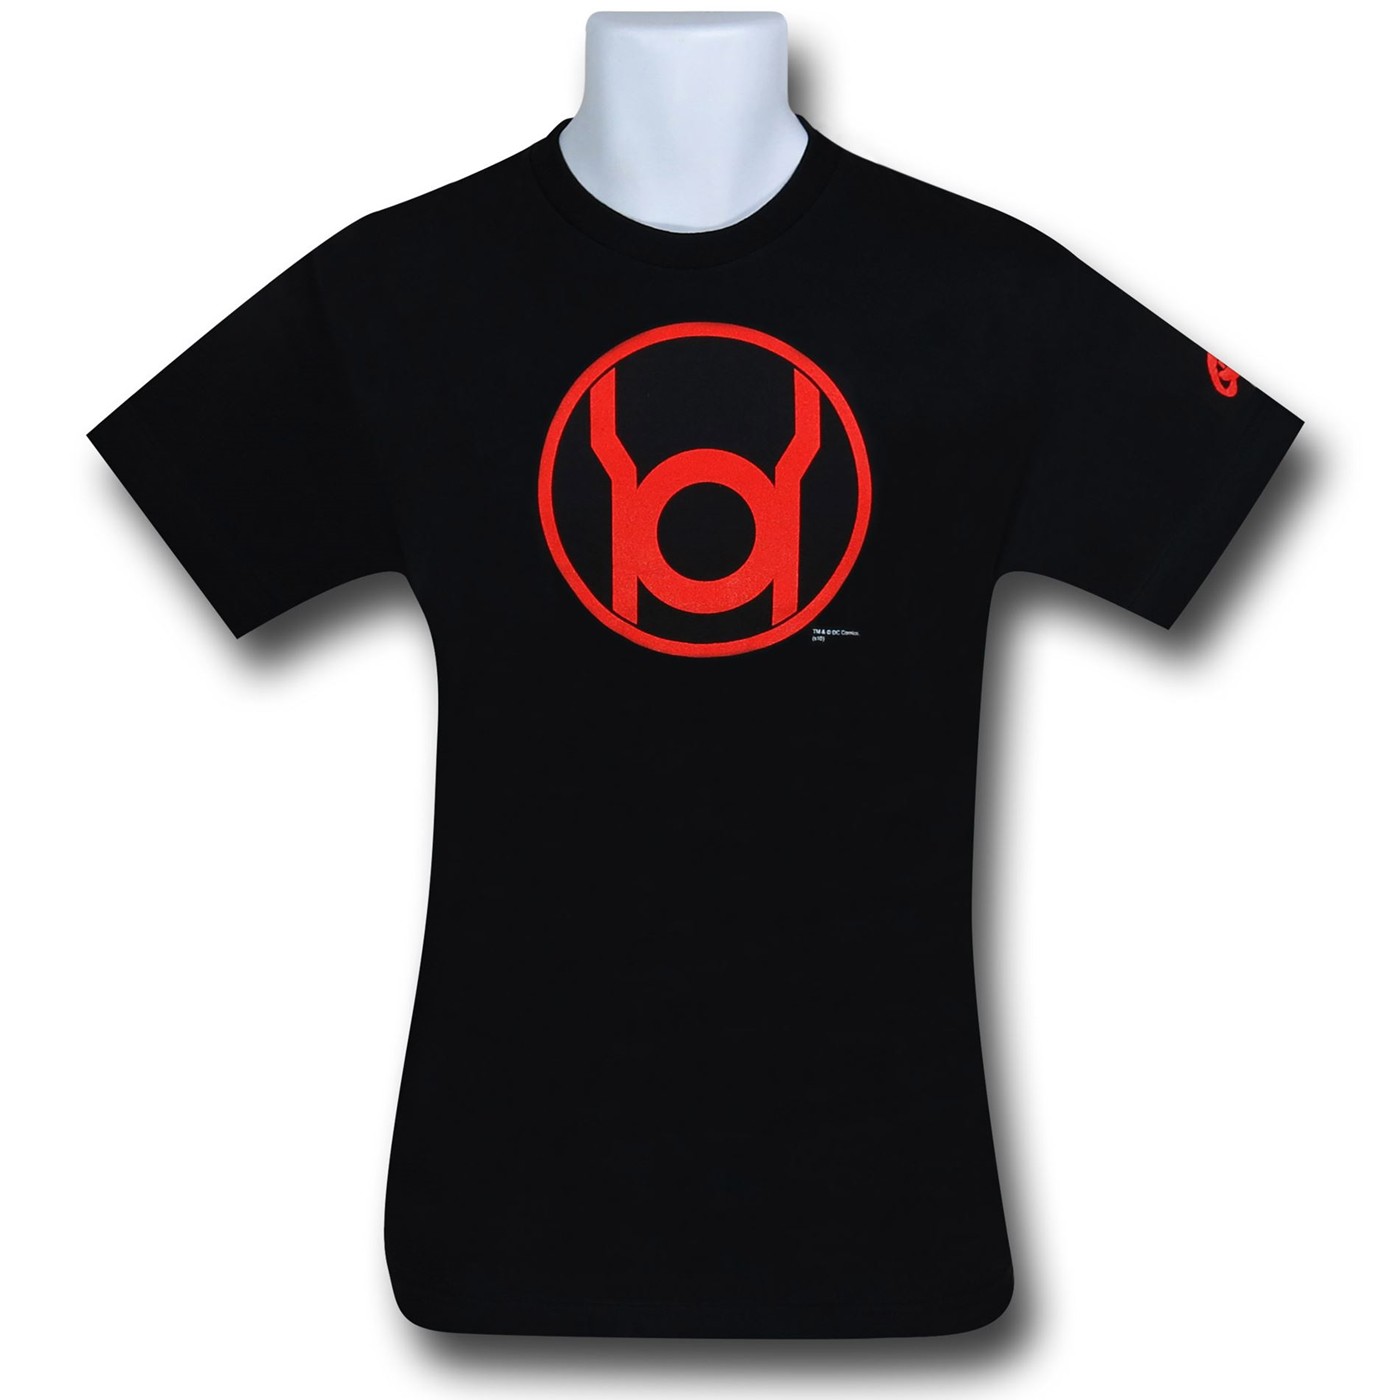 Red Lantern Symbol on Black T-Shirt